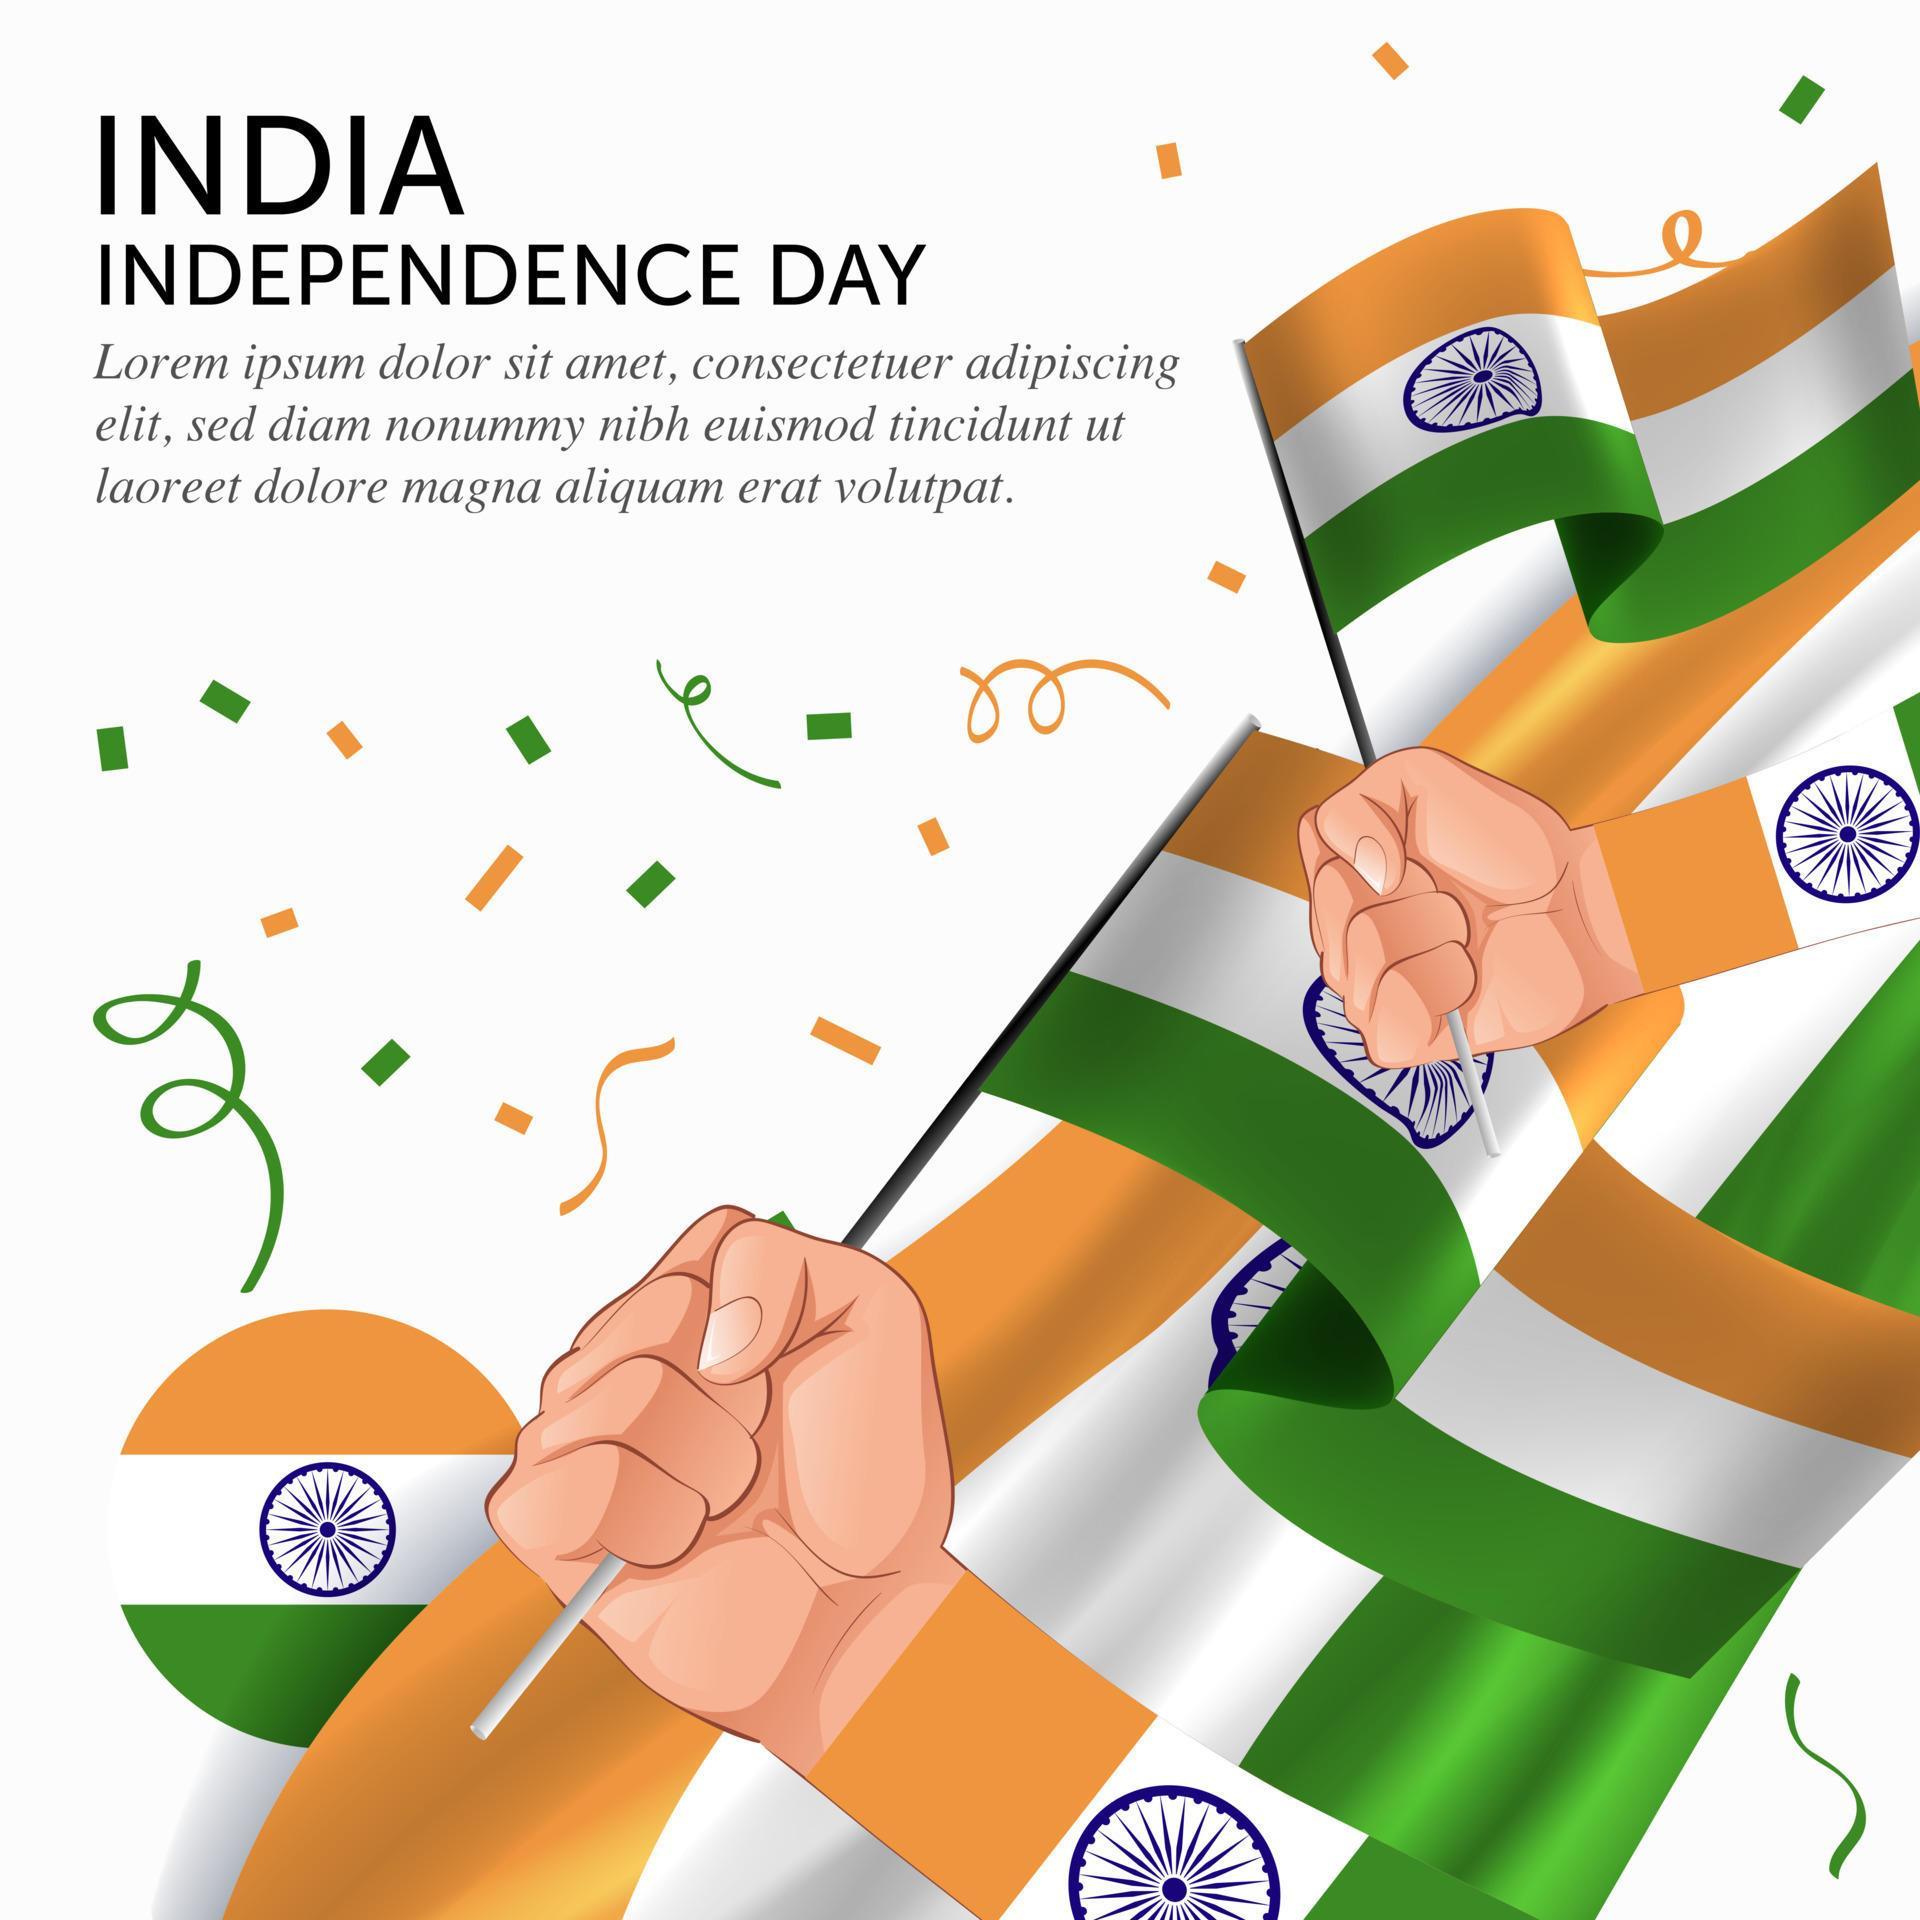 aniversario del día de la independencia de india. banner, tarjeta de felicitación, diseño de volante. diseño de plantilla de cartel vector